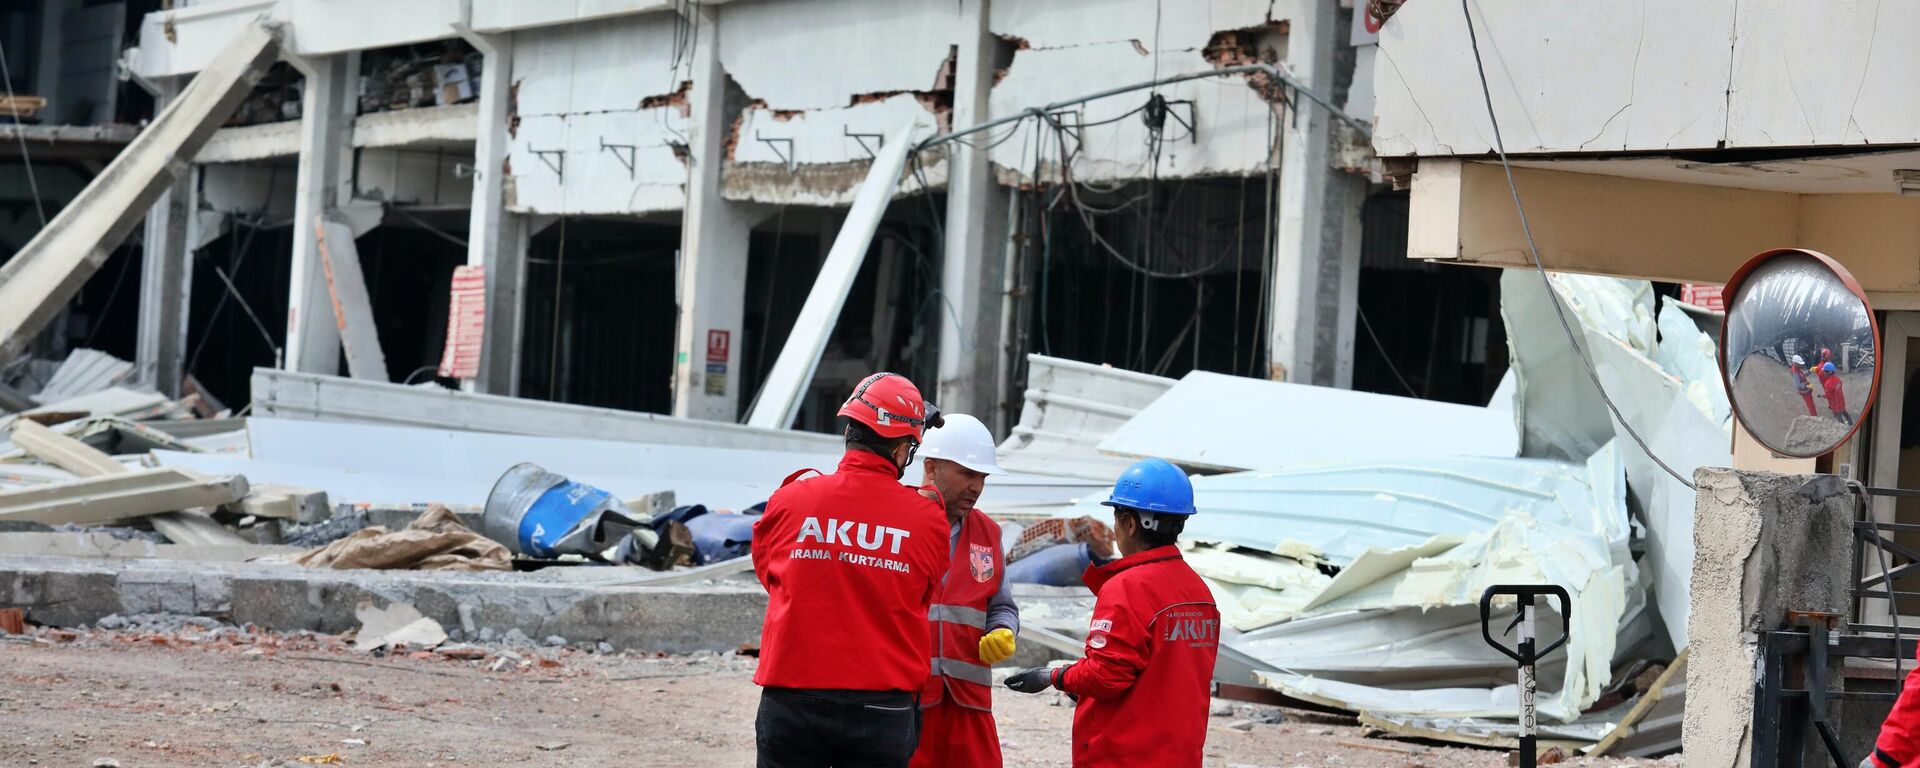 Malatya'daki 5.6'lık depremde Kahramanmaraş'ta fabrika çöktü: 1 ölü, 4 yaralı - Sputnik Türkiye, 1920, 27.02.2023